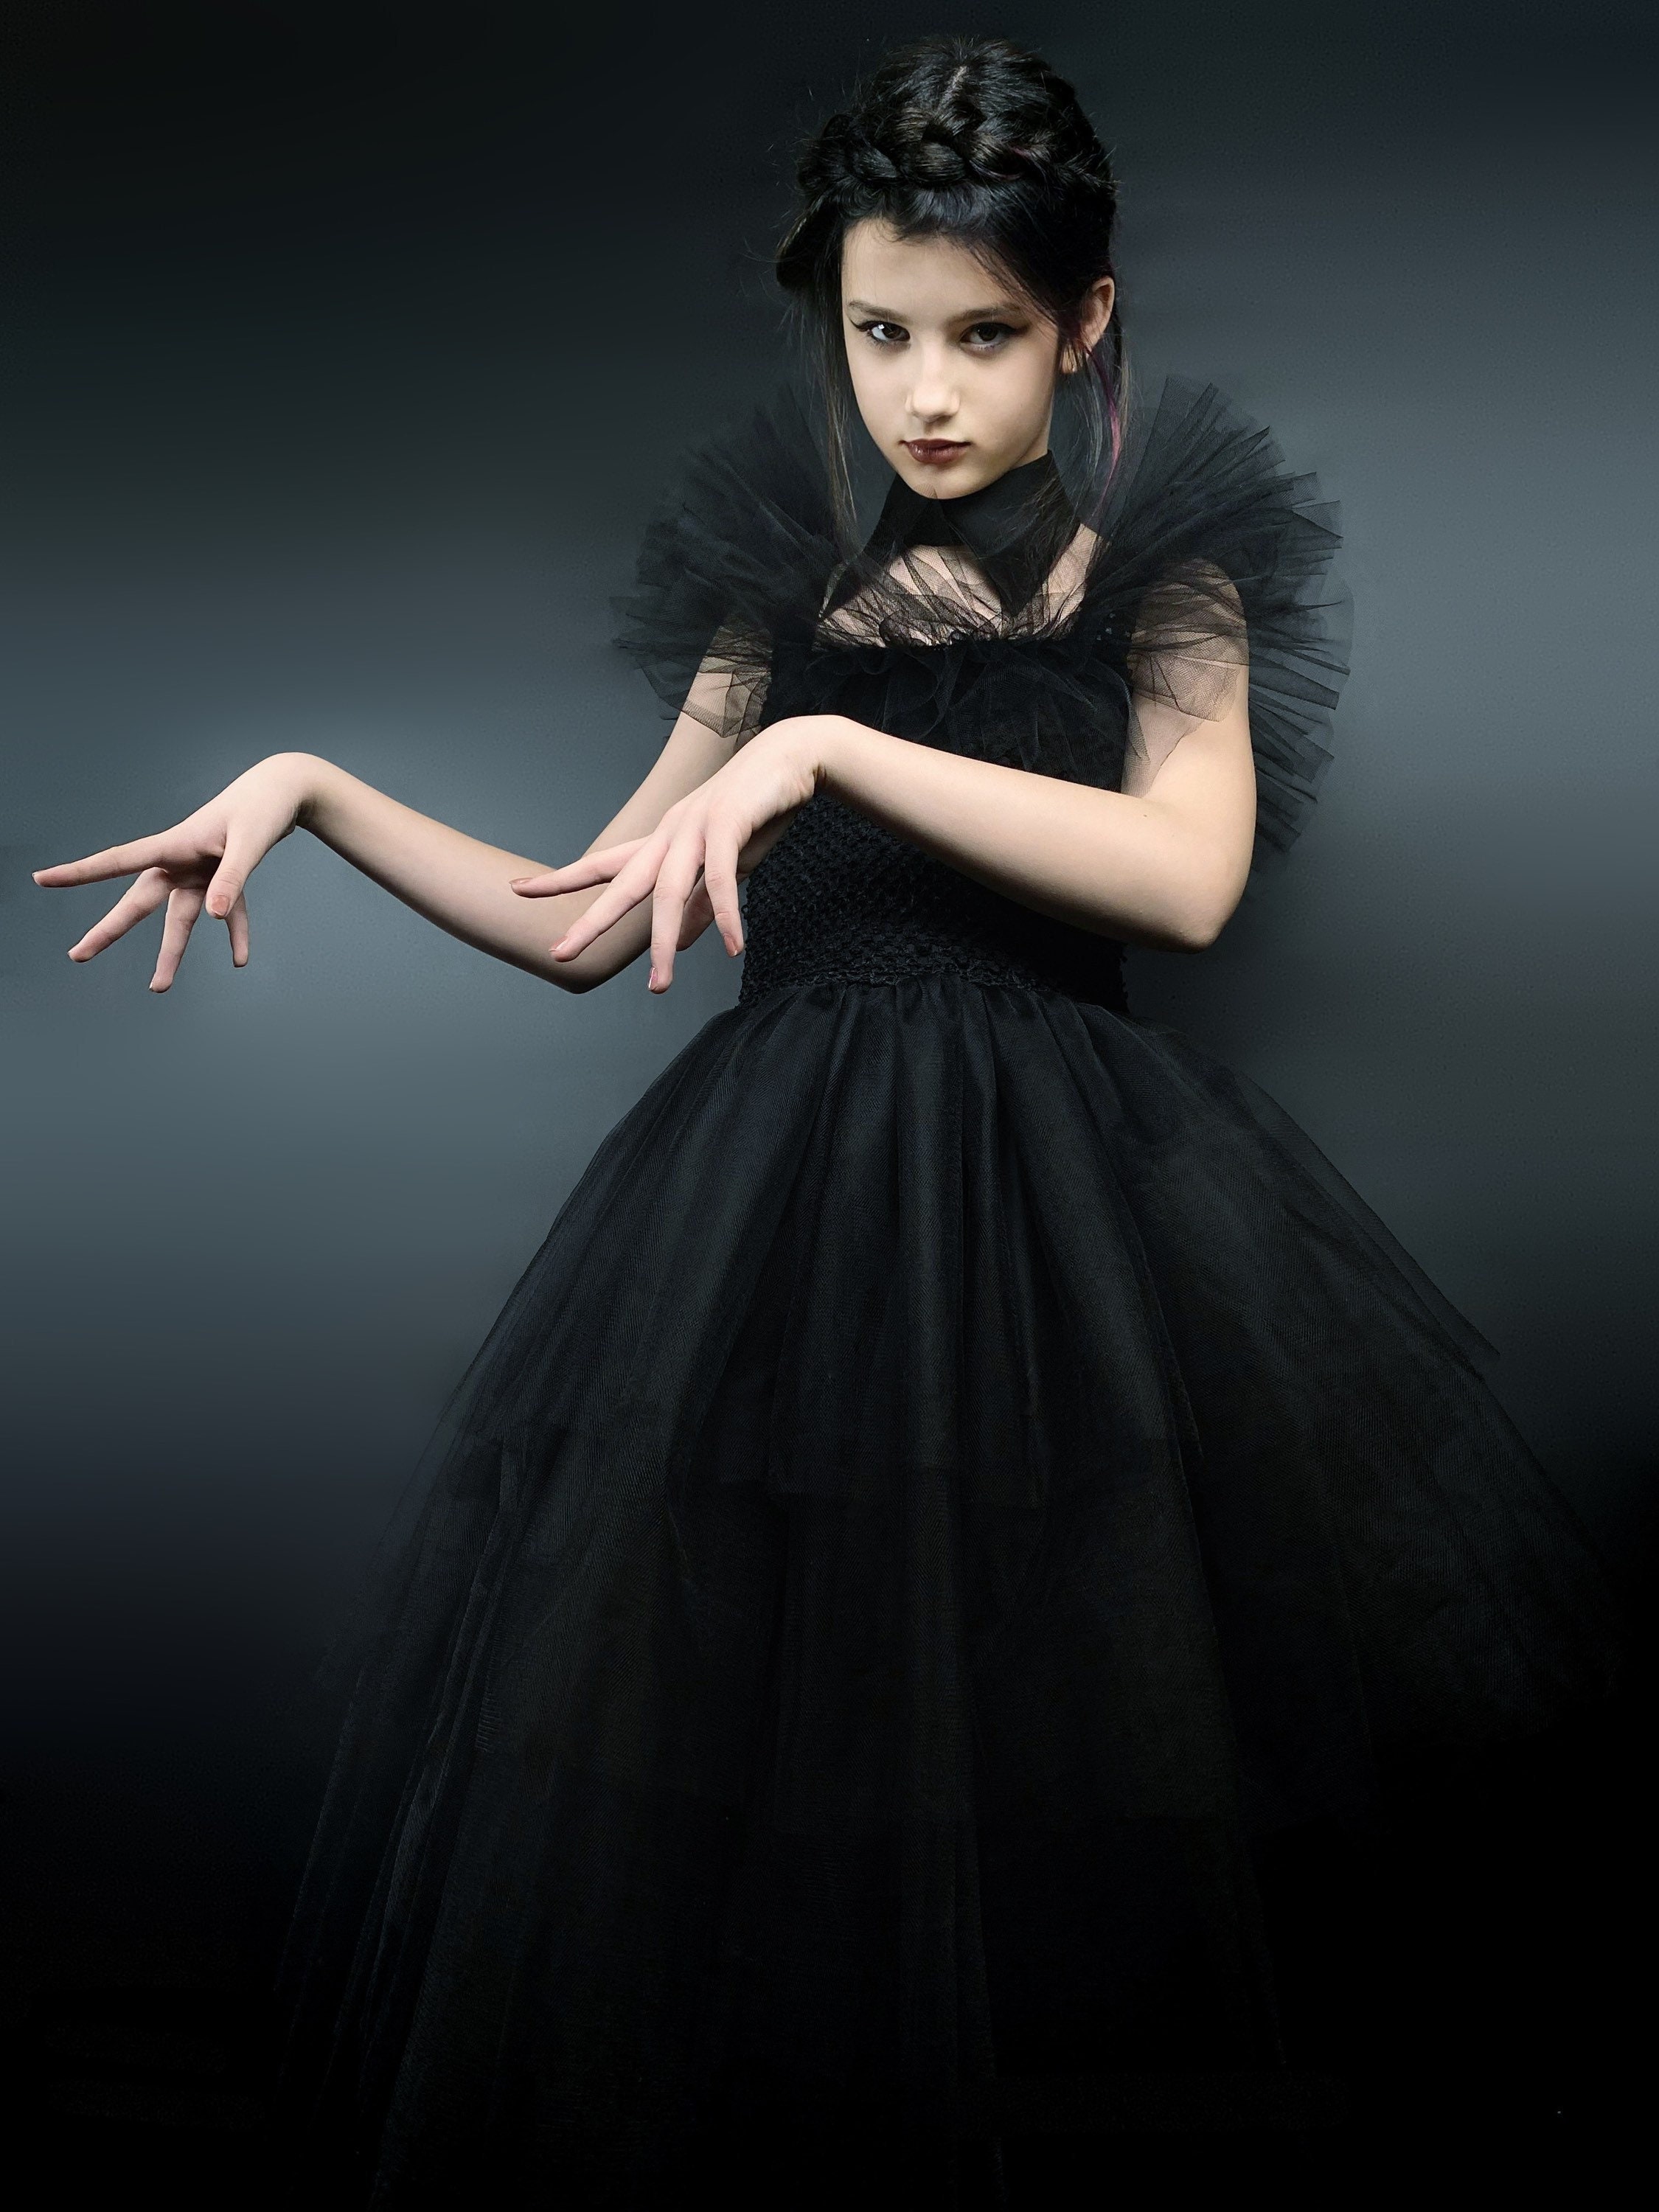 In Stock】Uwowo Wednesday Addams Rave'N Dance Black Gothic Prom Dress –  Uwowo Cosplay